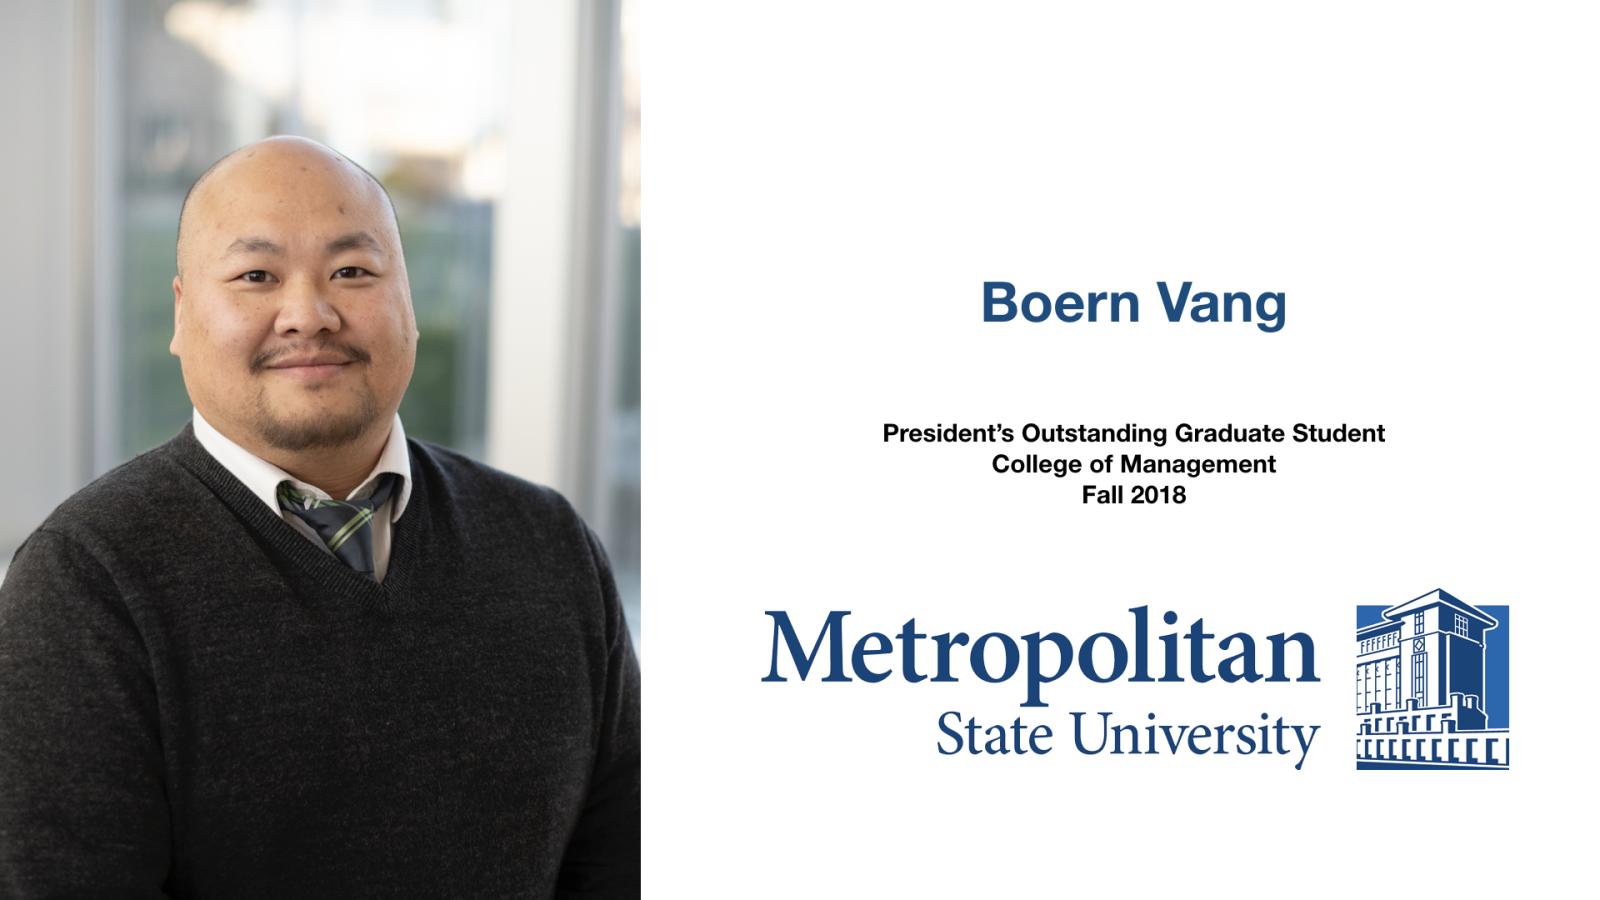 Boern Vang Outstanding Graduate Student